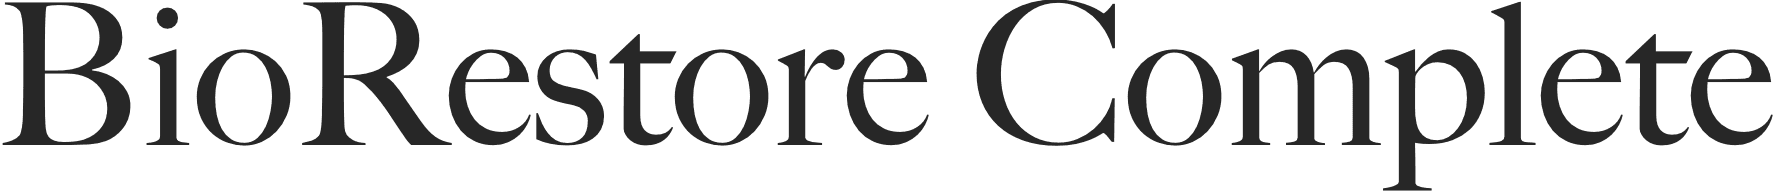 BioRestore Complete logo